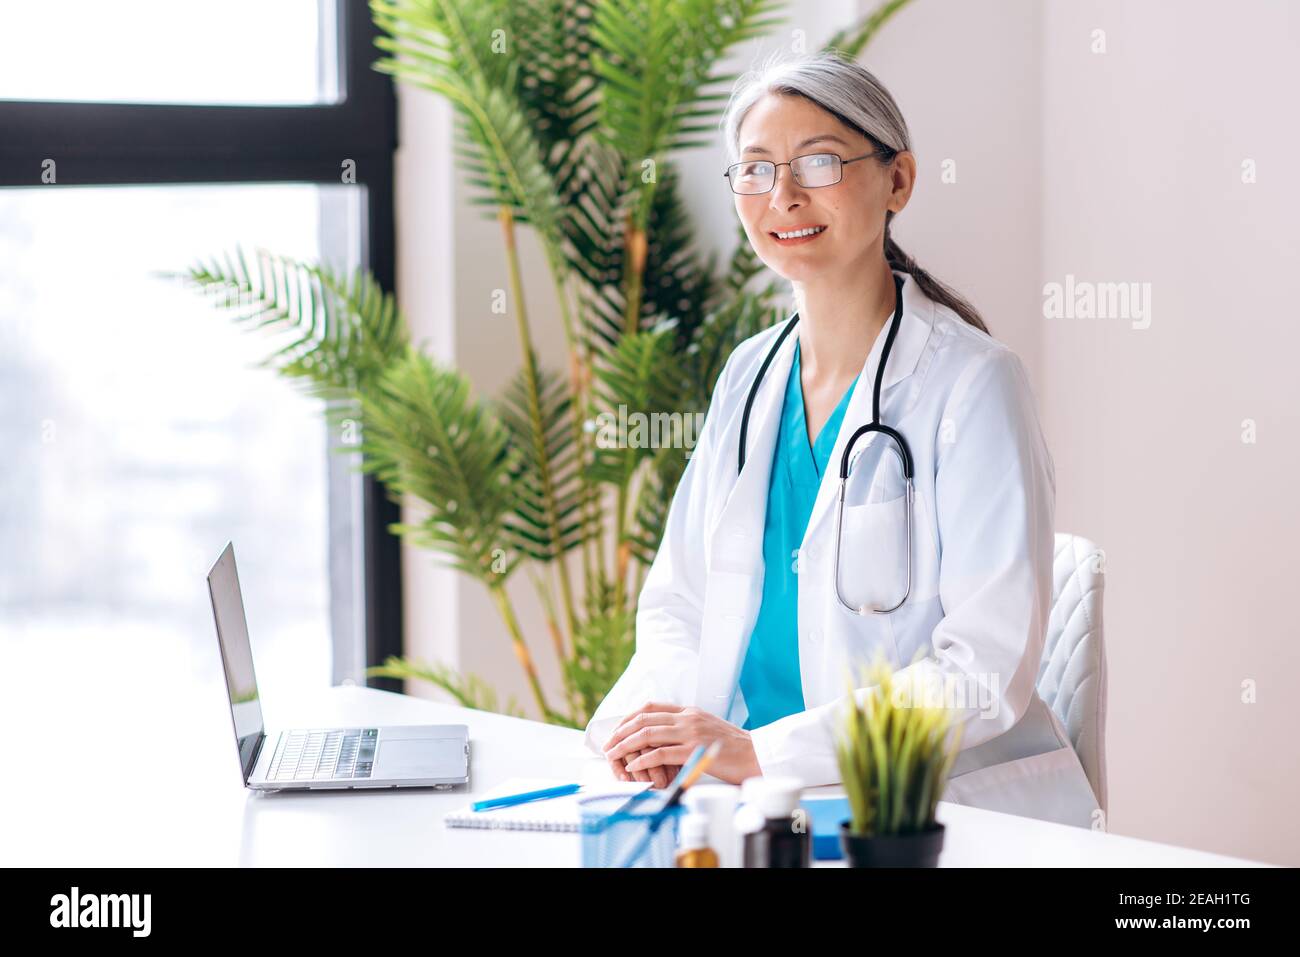 Grauhaarige Ärztin mittleren Alters in medizinischer Uniform und Brille blickt direkt auf die Kamera am Arbeitsplatz in der Klinik. Medizinische Hilfe und Beratung, Gesundheitskonzept Stockfoto